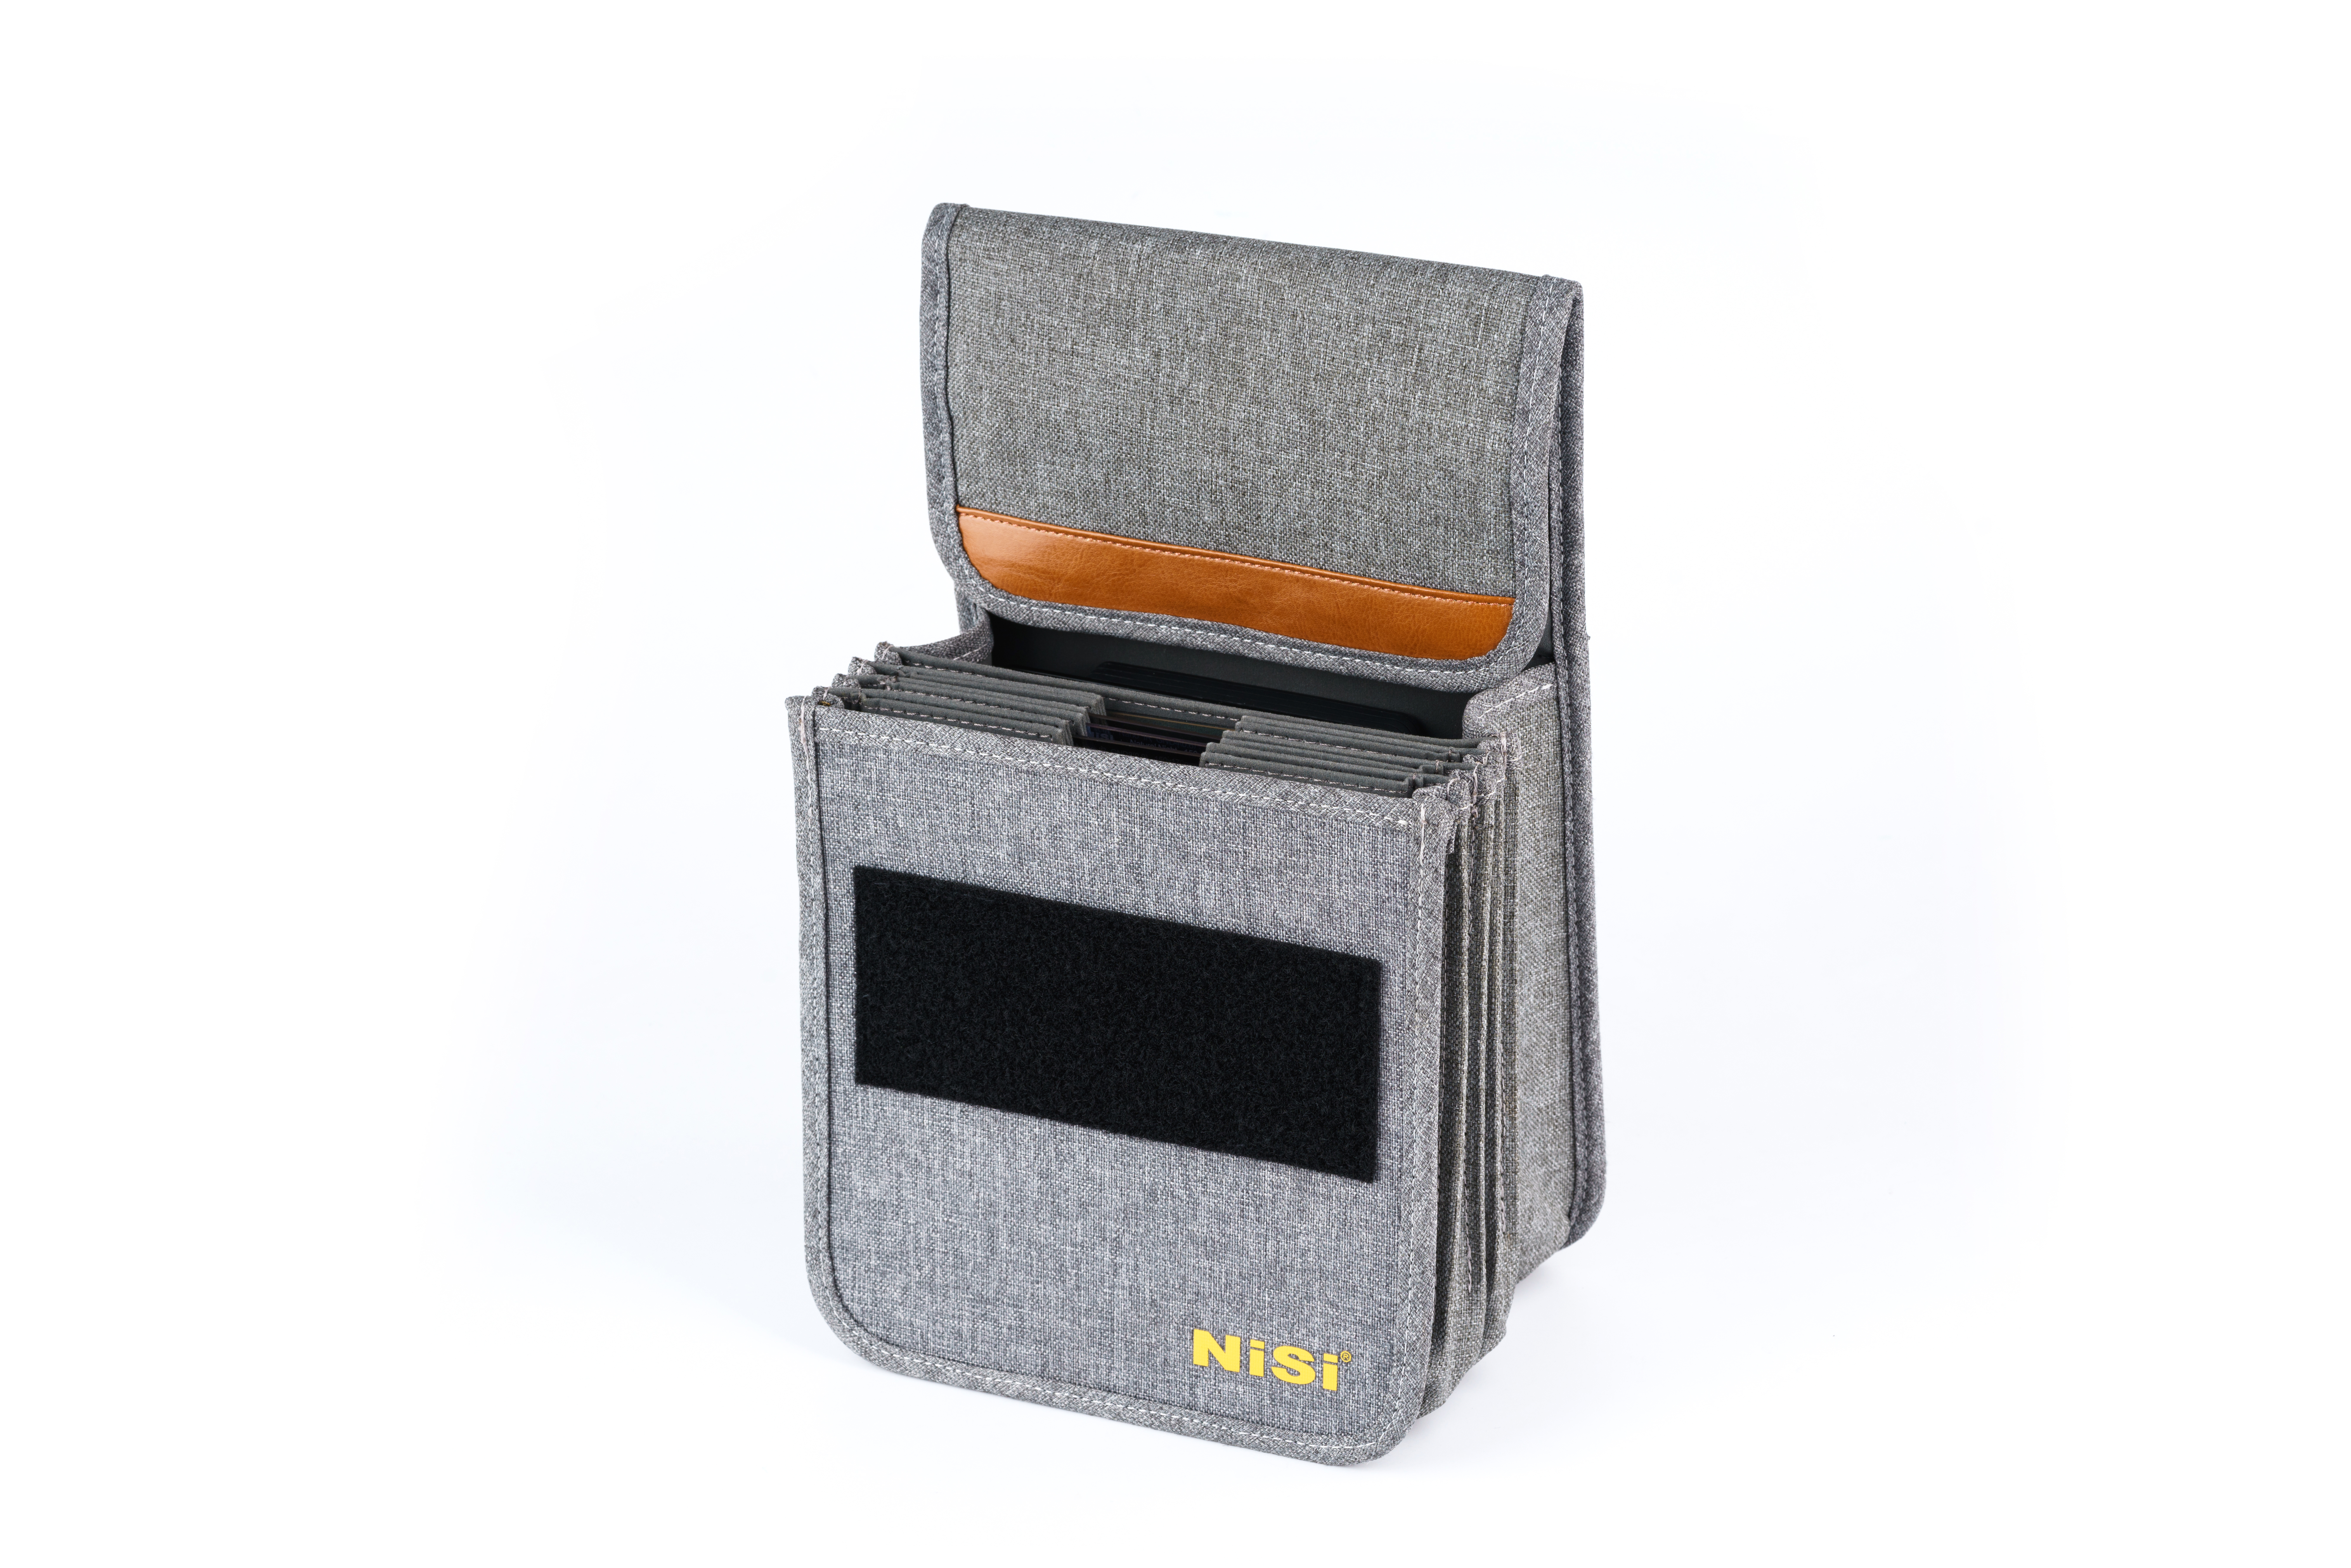 NiSi Filtertasche Softcase Caddy für 150mm System geöffnet